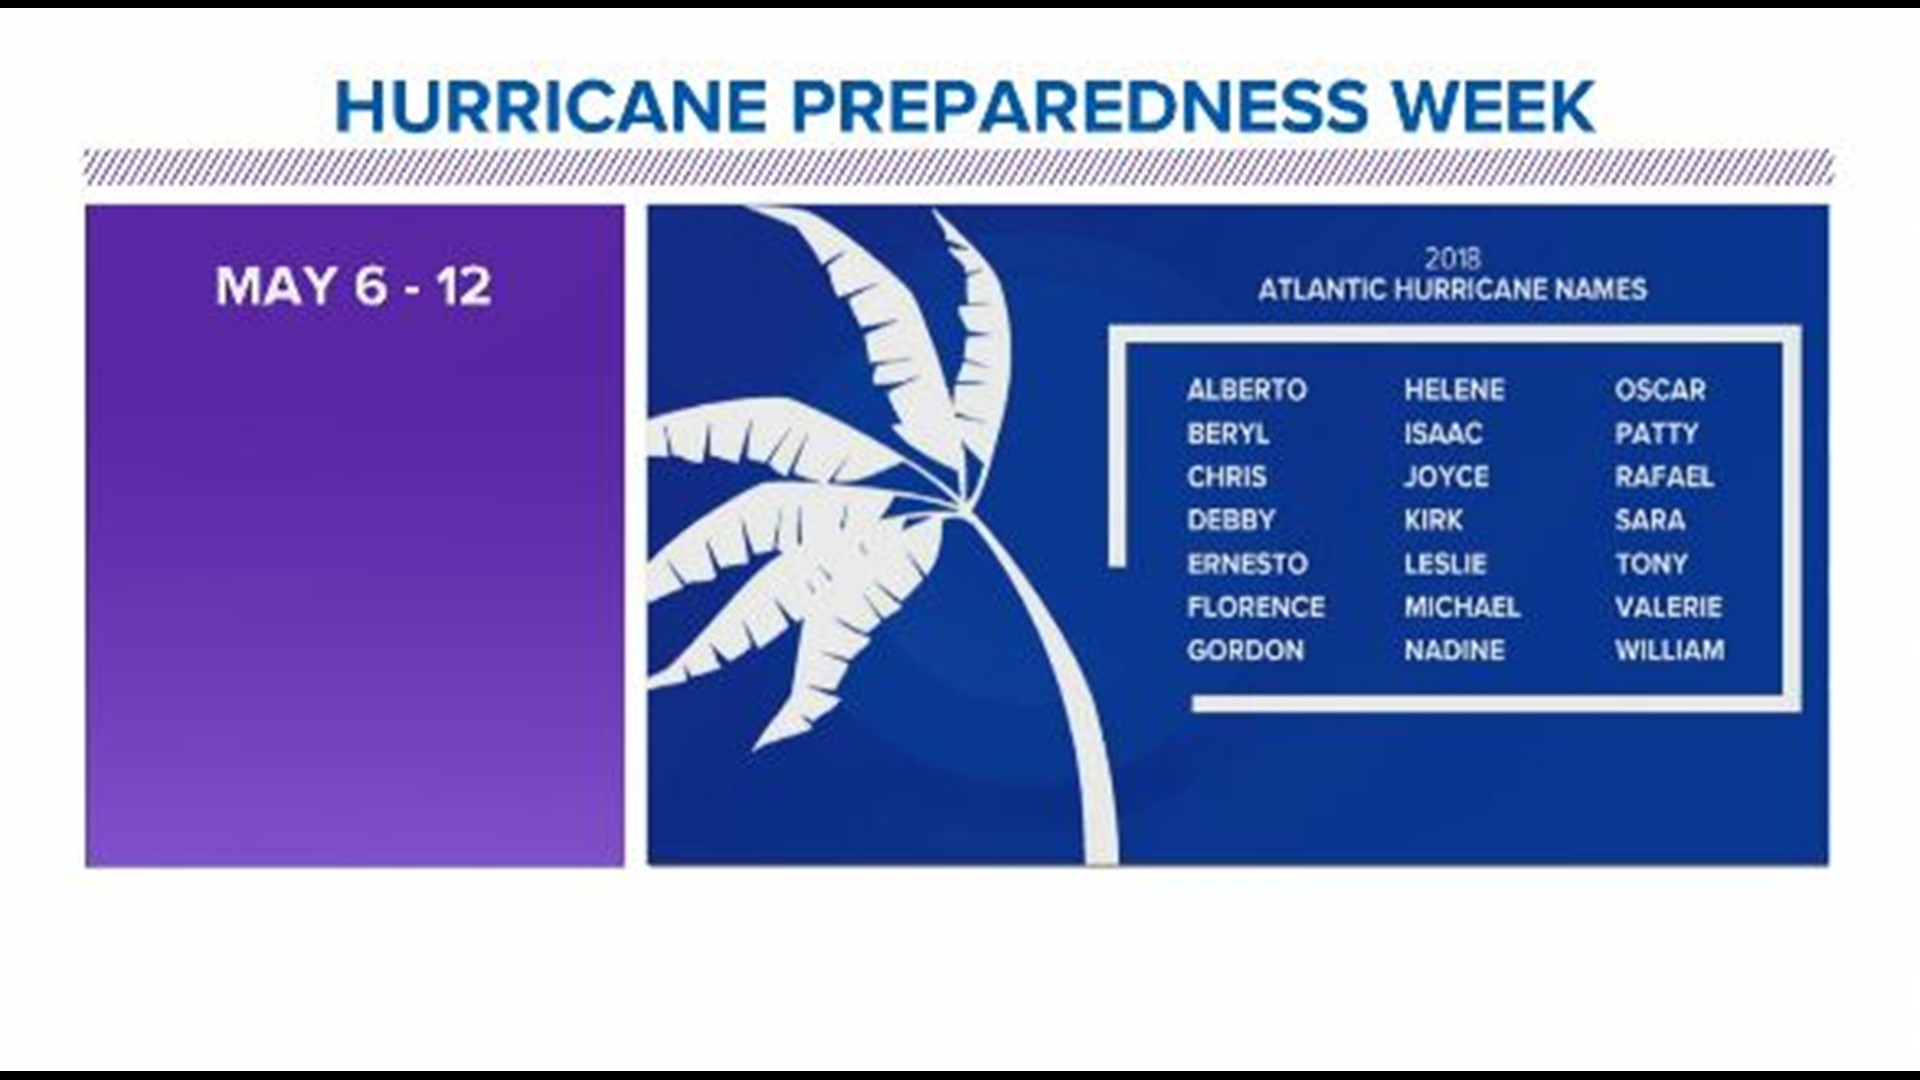 This is Hurricane Preparedness Week